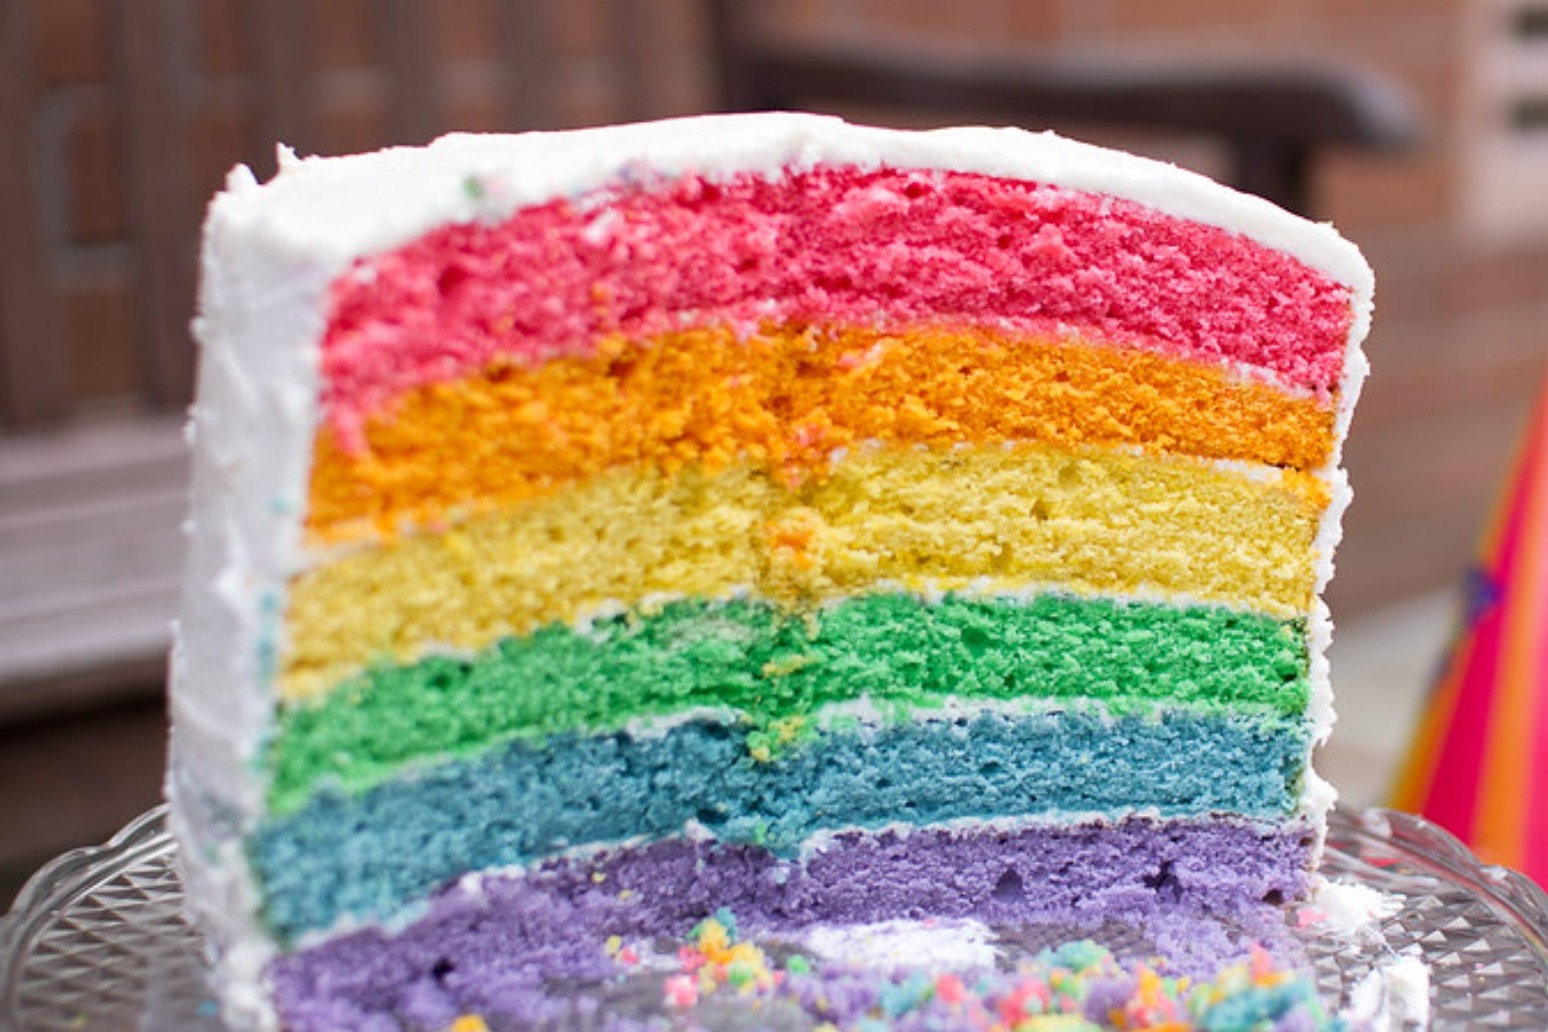 European Court to rule on long-running ‘gay cake’ saga 